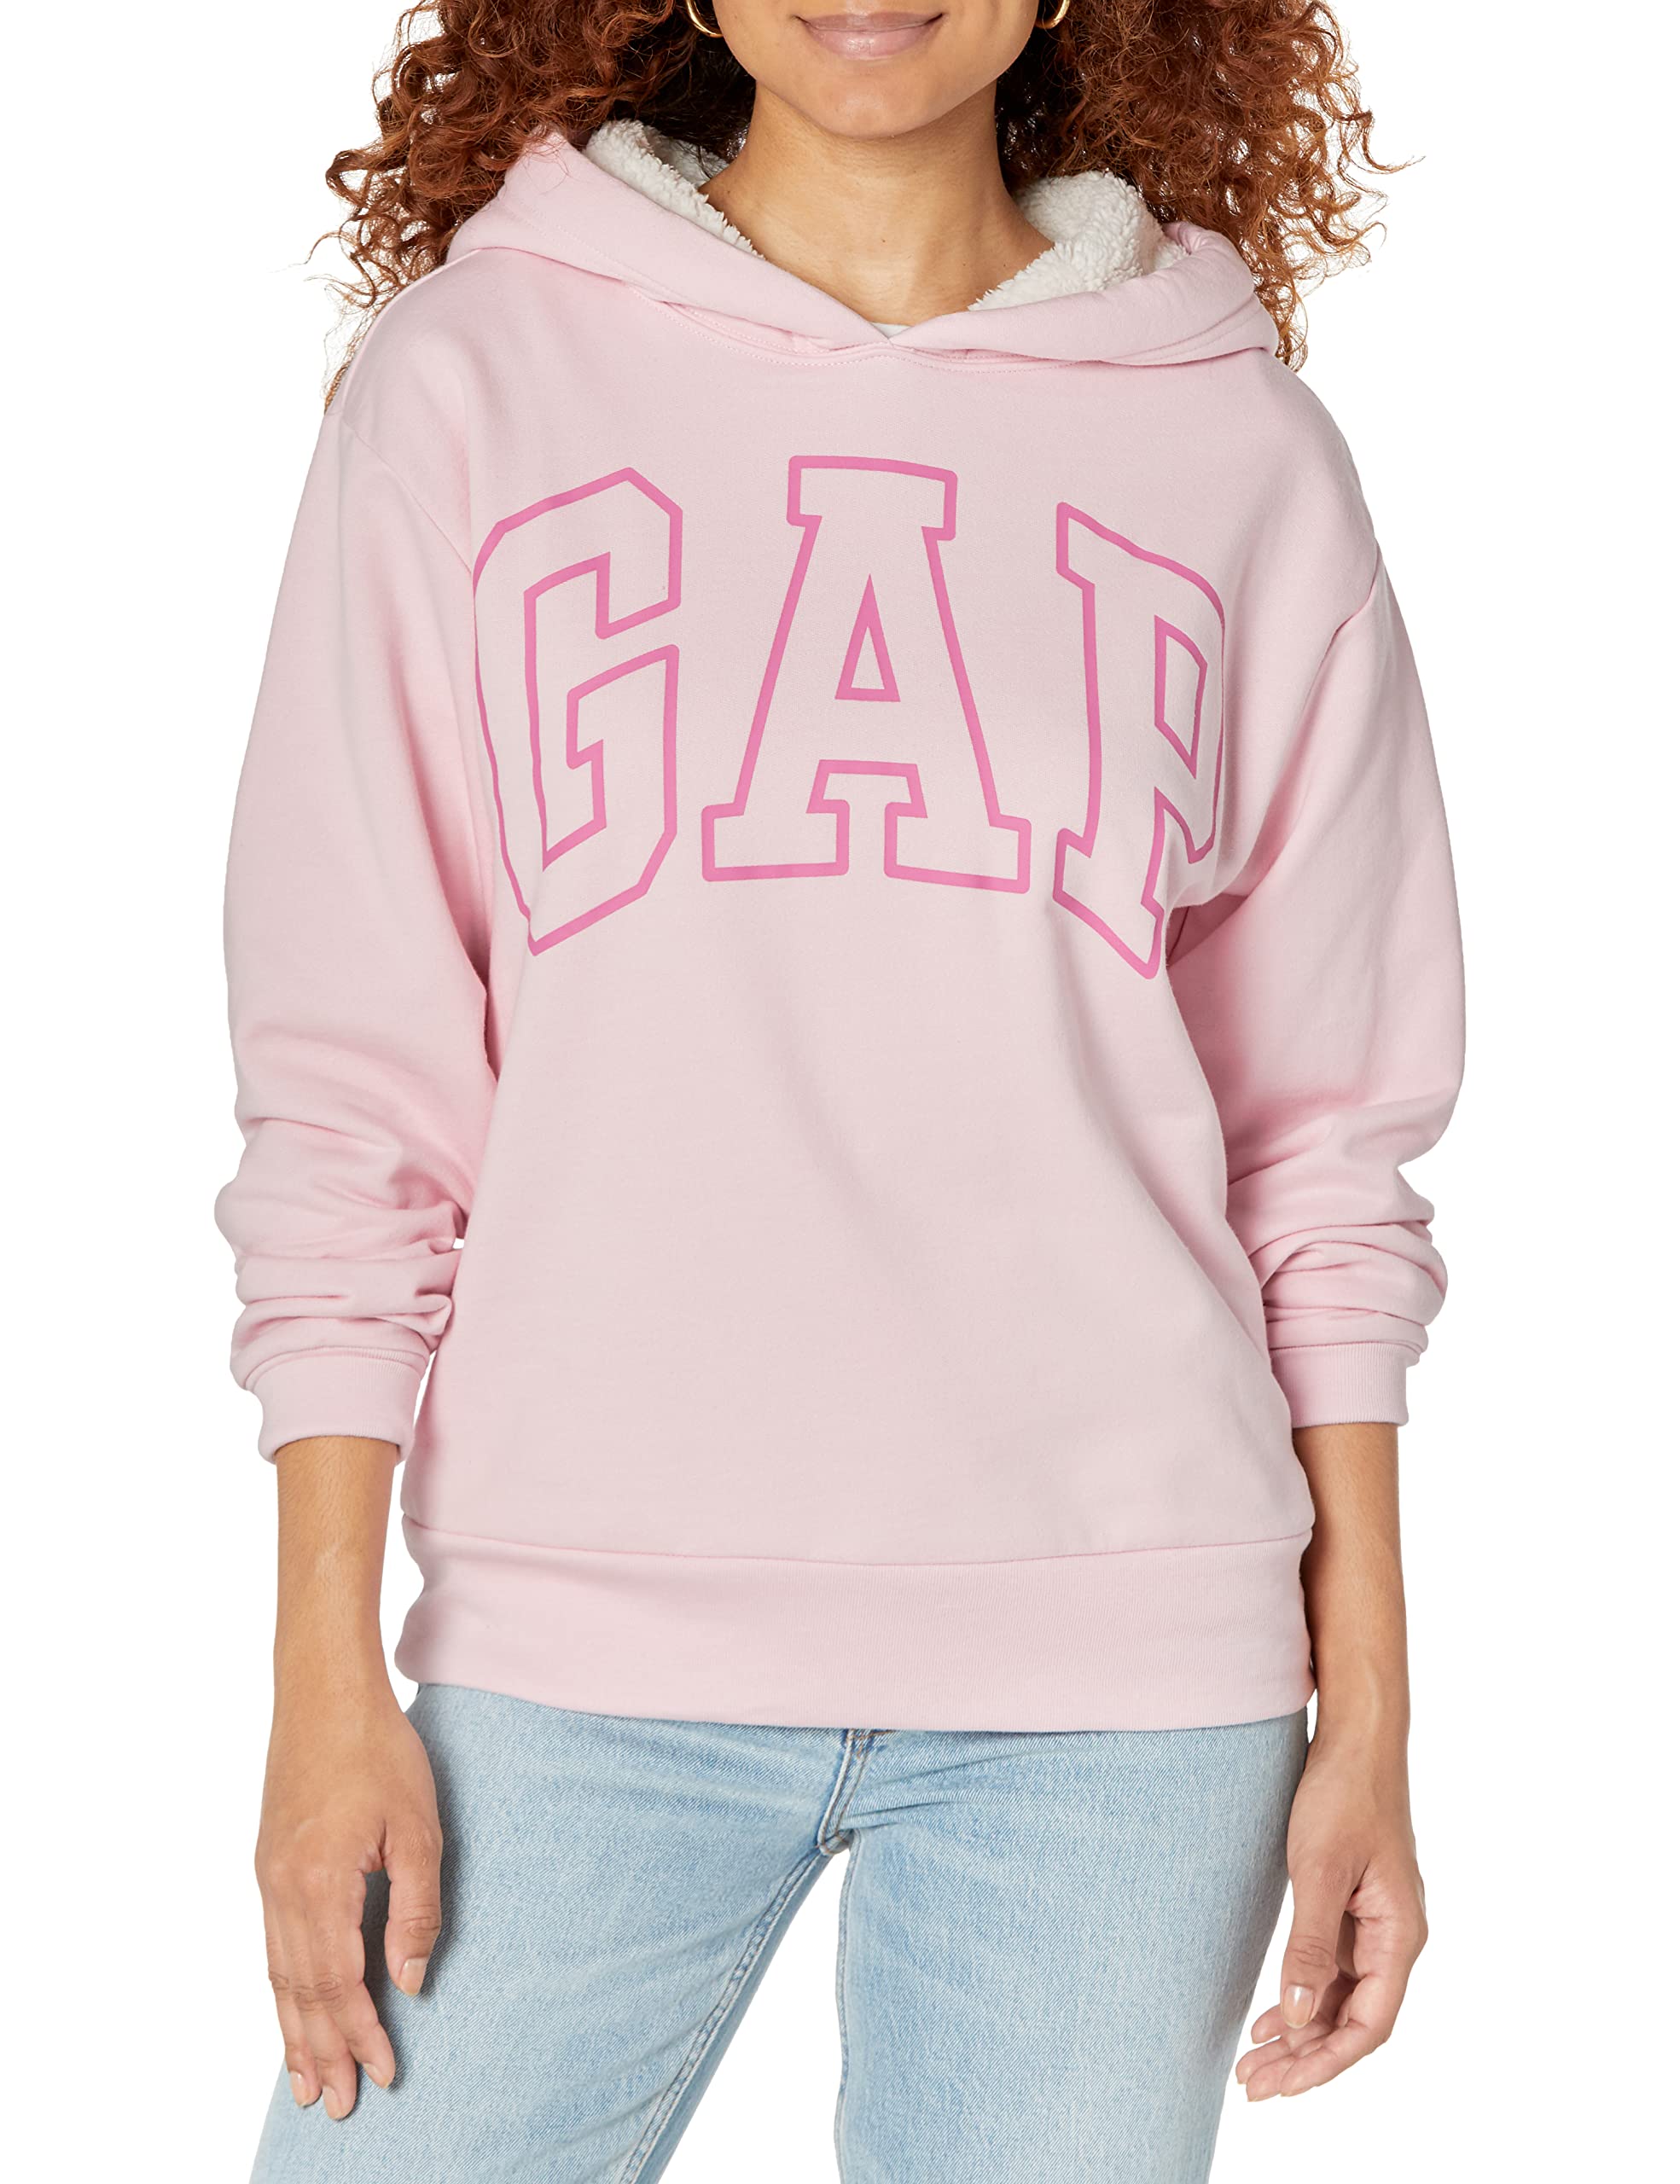 GAP Women's Logo Sherpa Lined Hooded Sweatshirt